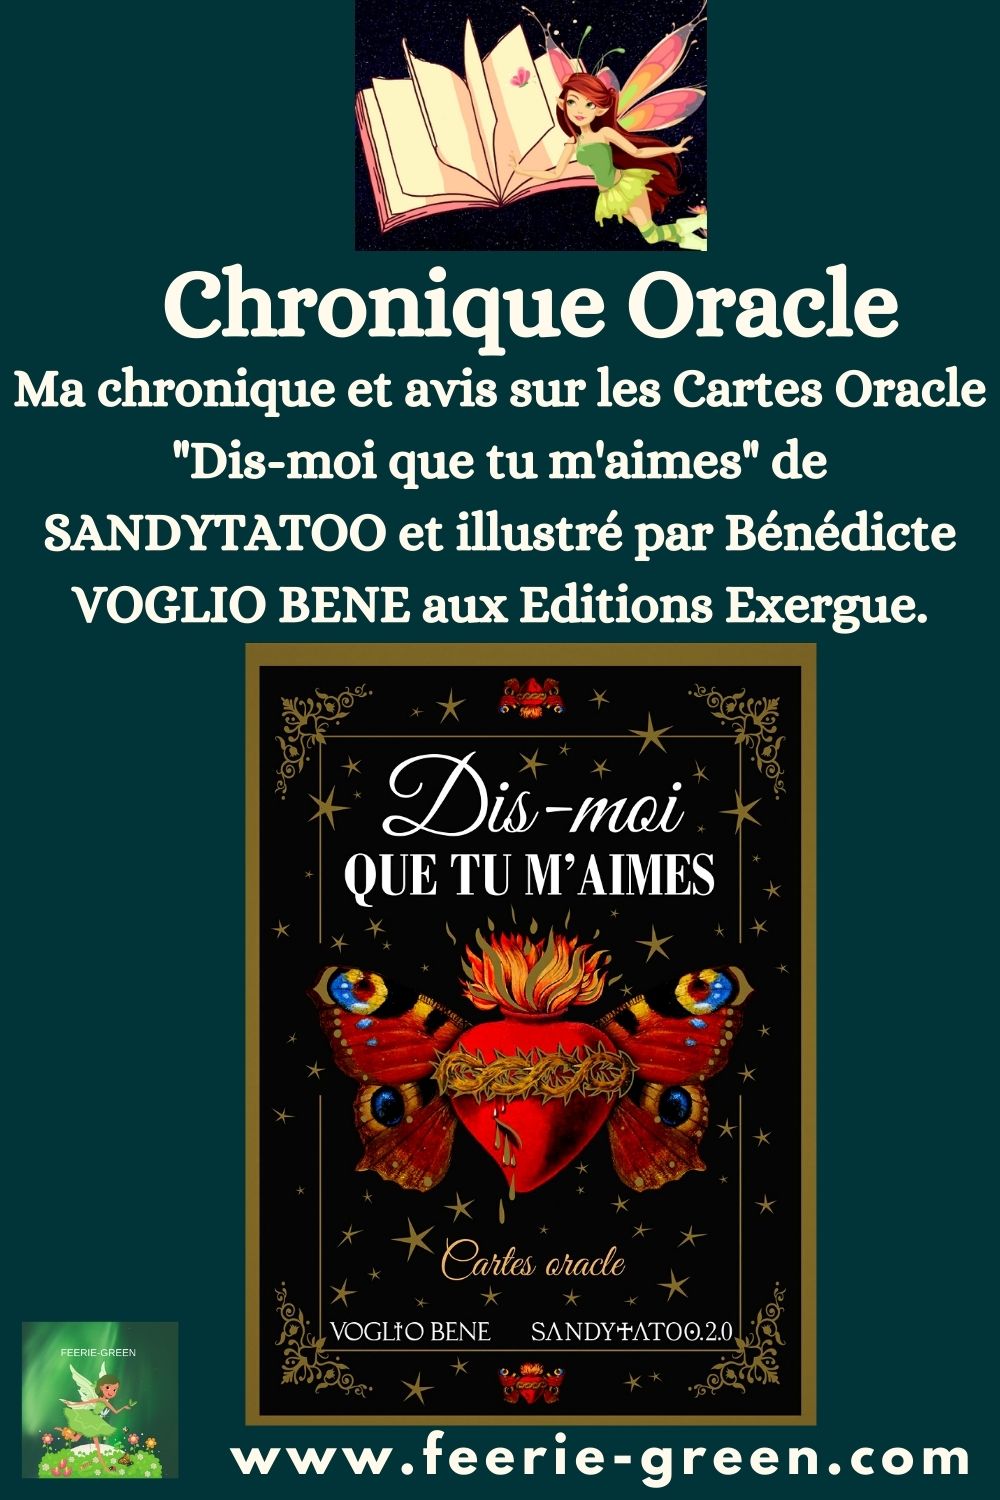 Cartes Oracle Dis-moi que tu m'aimes de SANDYTATOO illustrées par Bénédicte VOGLIO BENE - pinterest